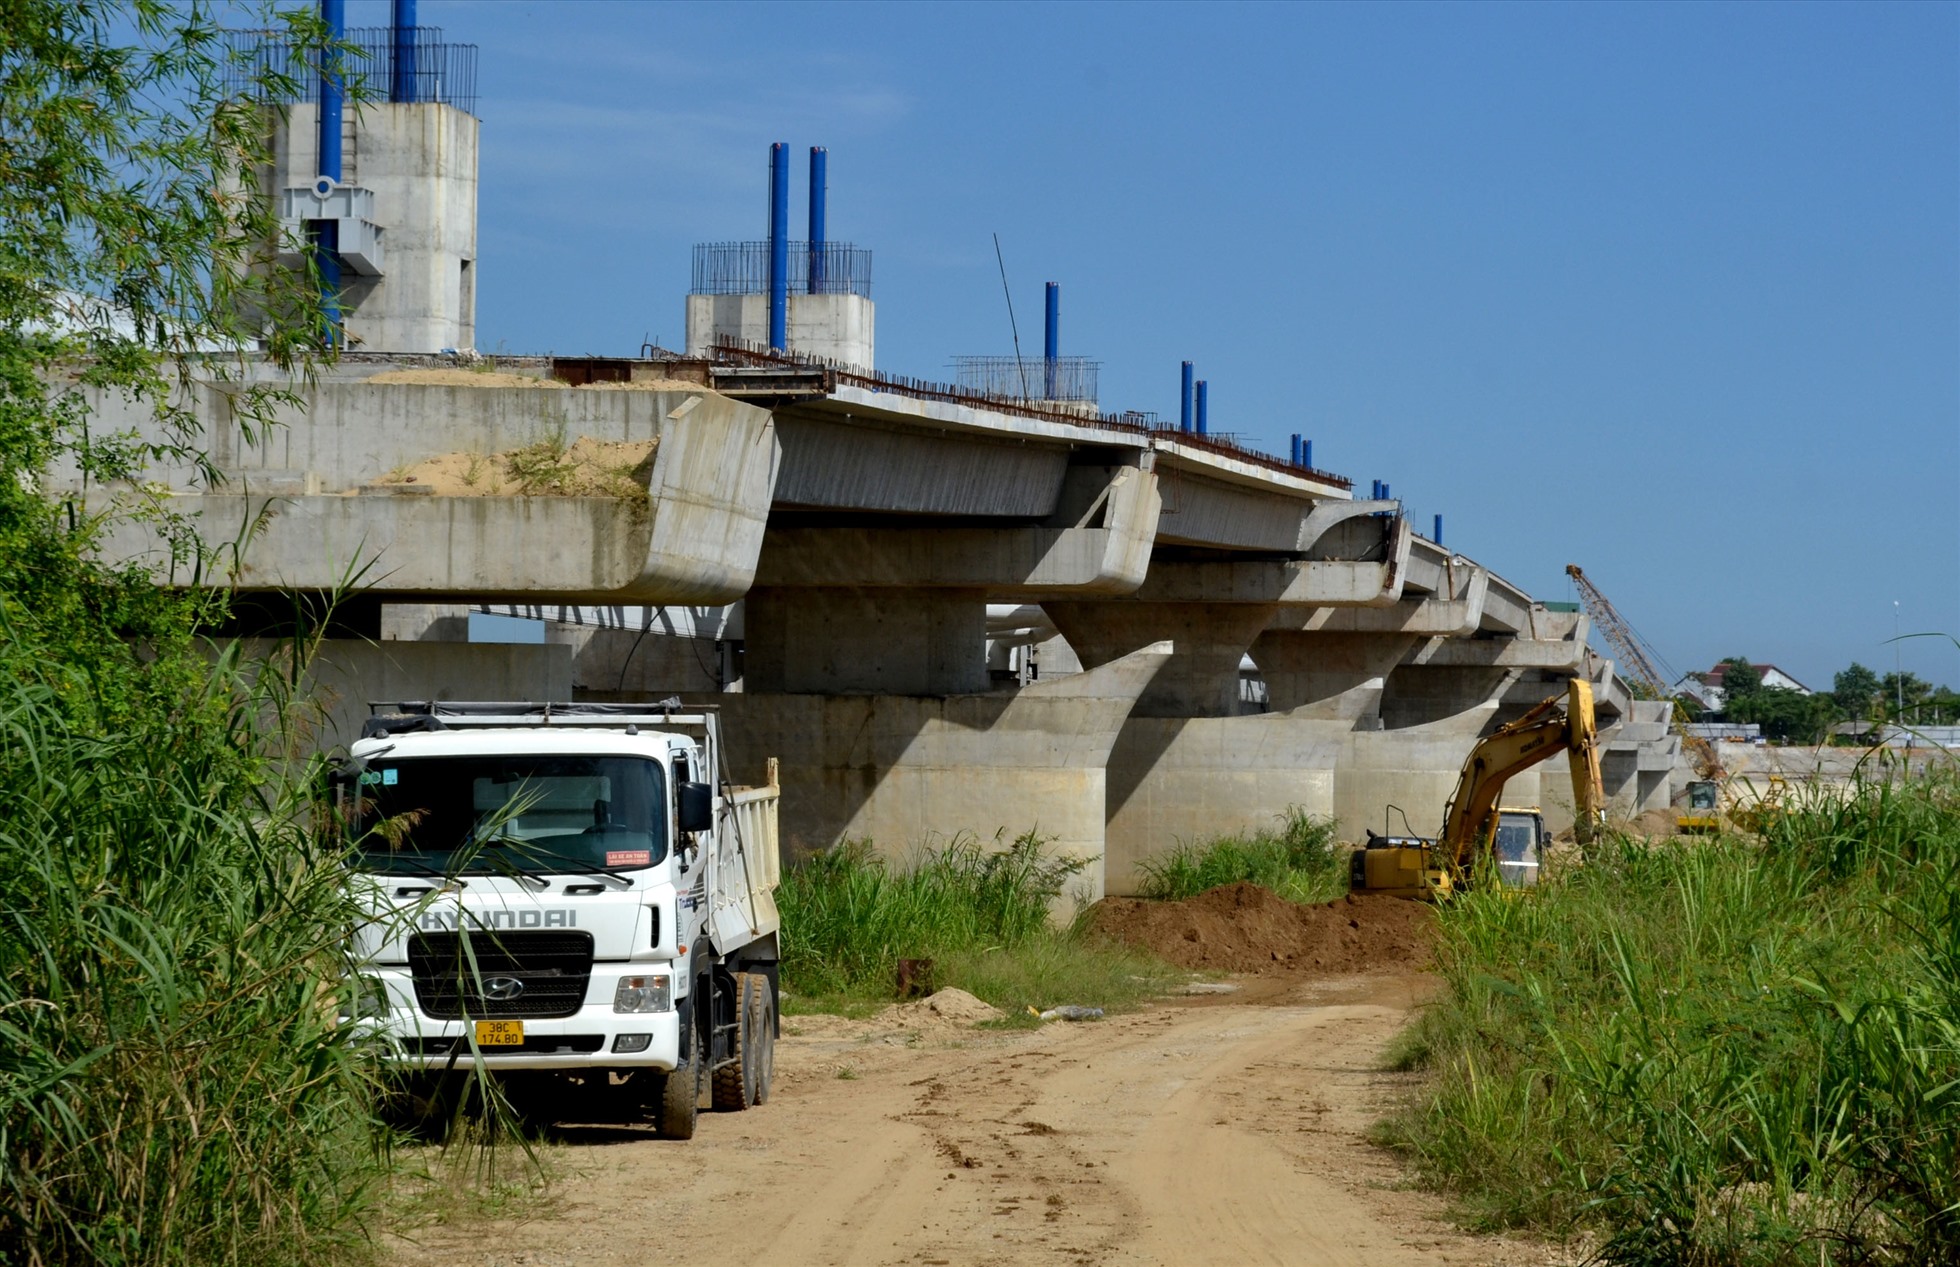 Dự án đập dâng hạ lưu sông Trà Khúc do Ban Quản lý dự án đầu tư xây dựng các công trình giao thông tỉnh Quảng Ngãi làm chủ đầu tư, với tổng kinh phí khoảng 1.498 tỉ đồng.